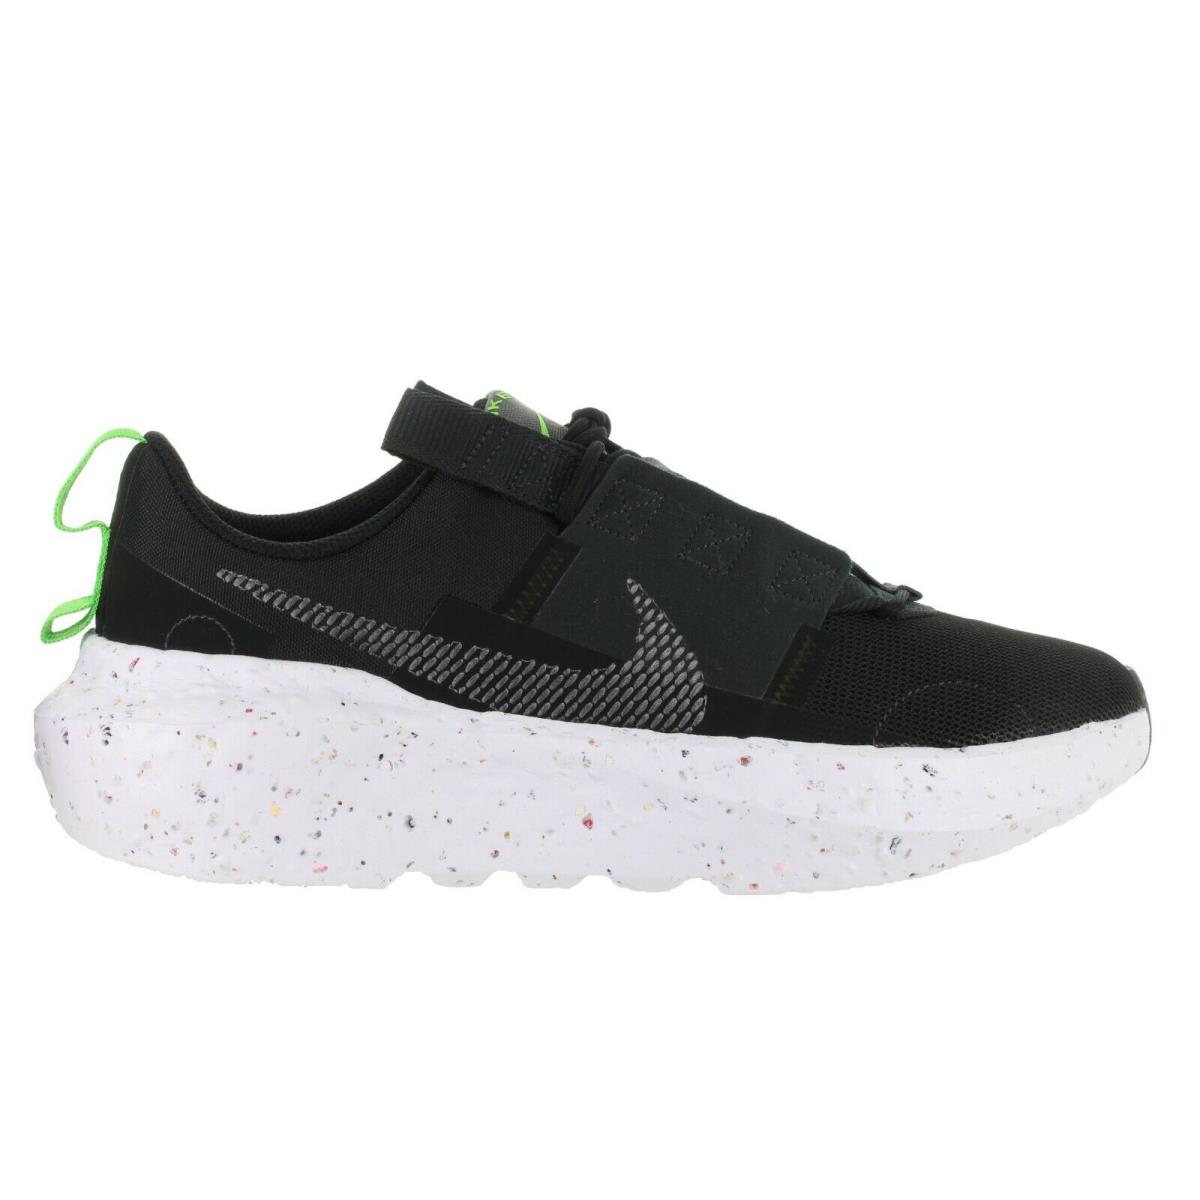 Nike Men`s Crater Impact Black-white Running Shoes Size 10 - 11 - Black, Iron Grey, Off Noir, Dark Smoke Grey